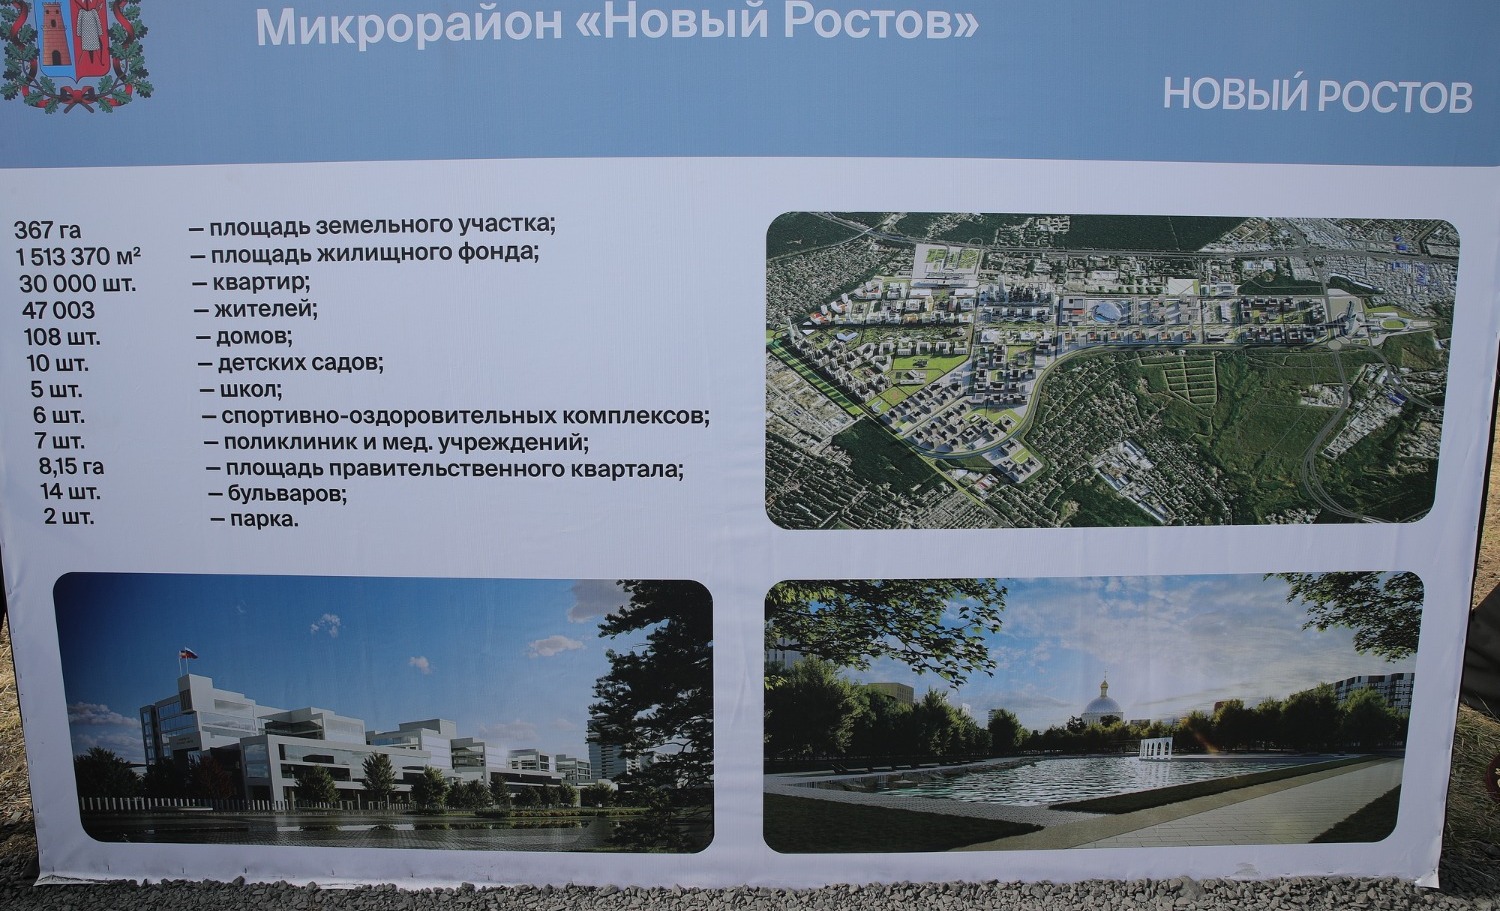 Сейчас в Ростове, согласно документам, собираются восстановить храм, но уже на другом месте. 